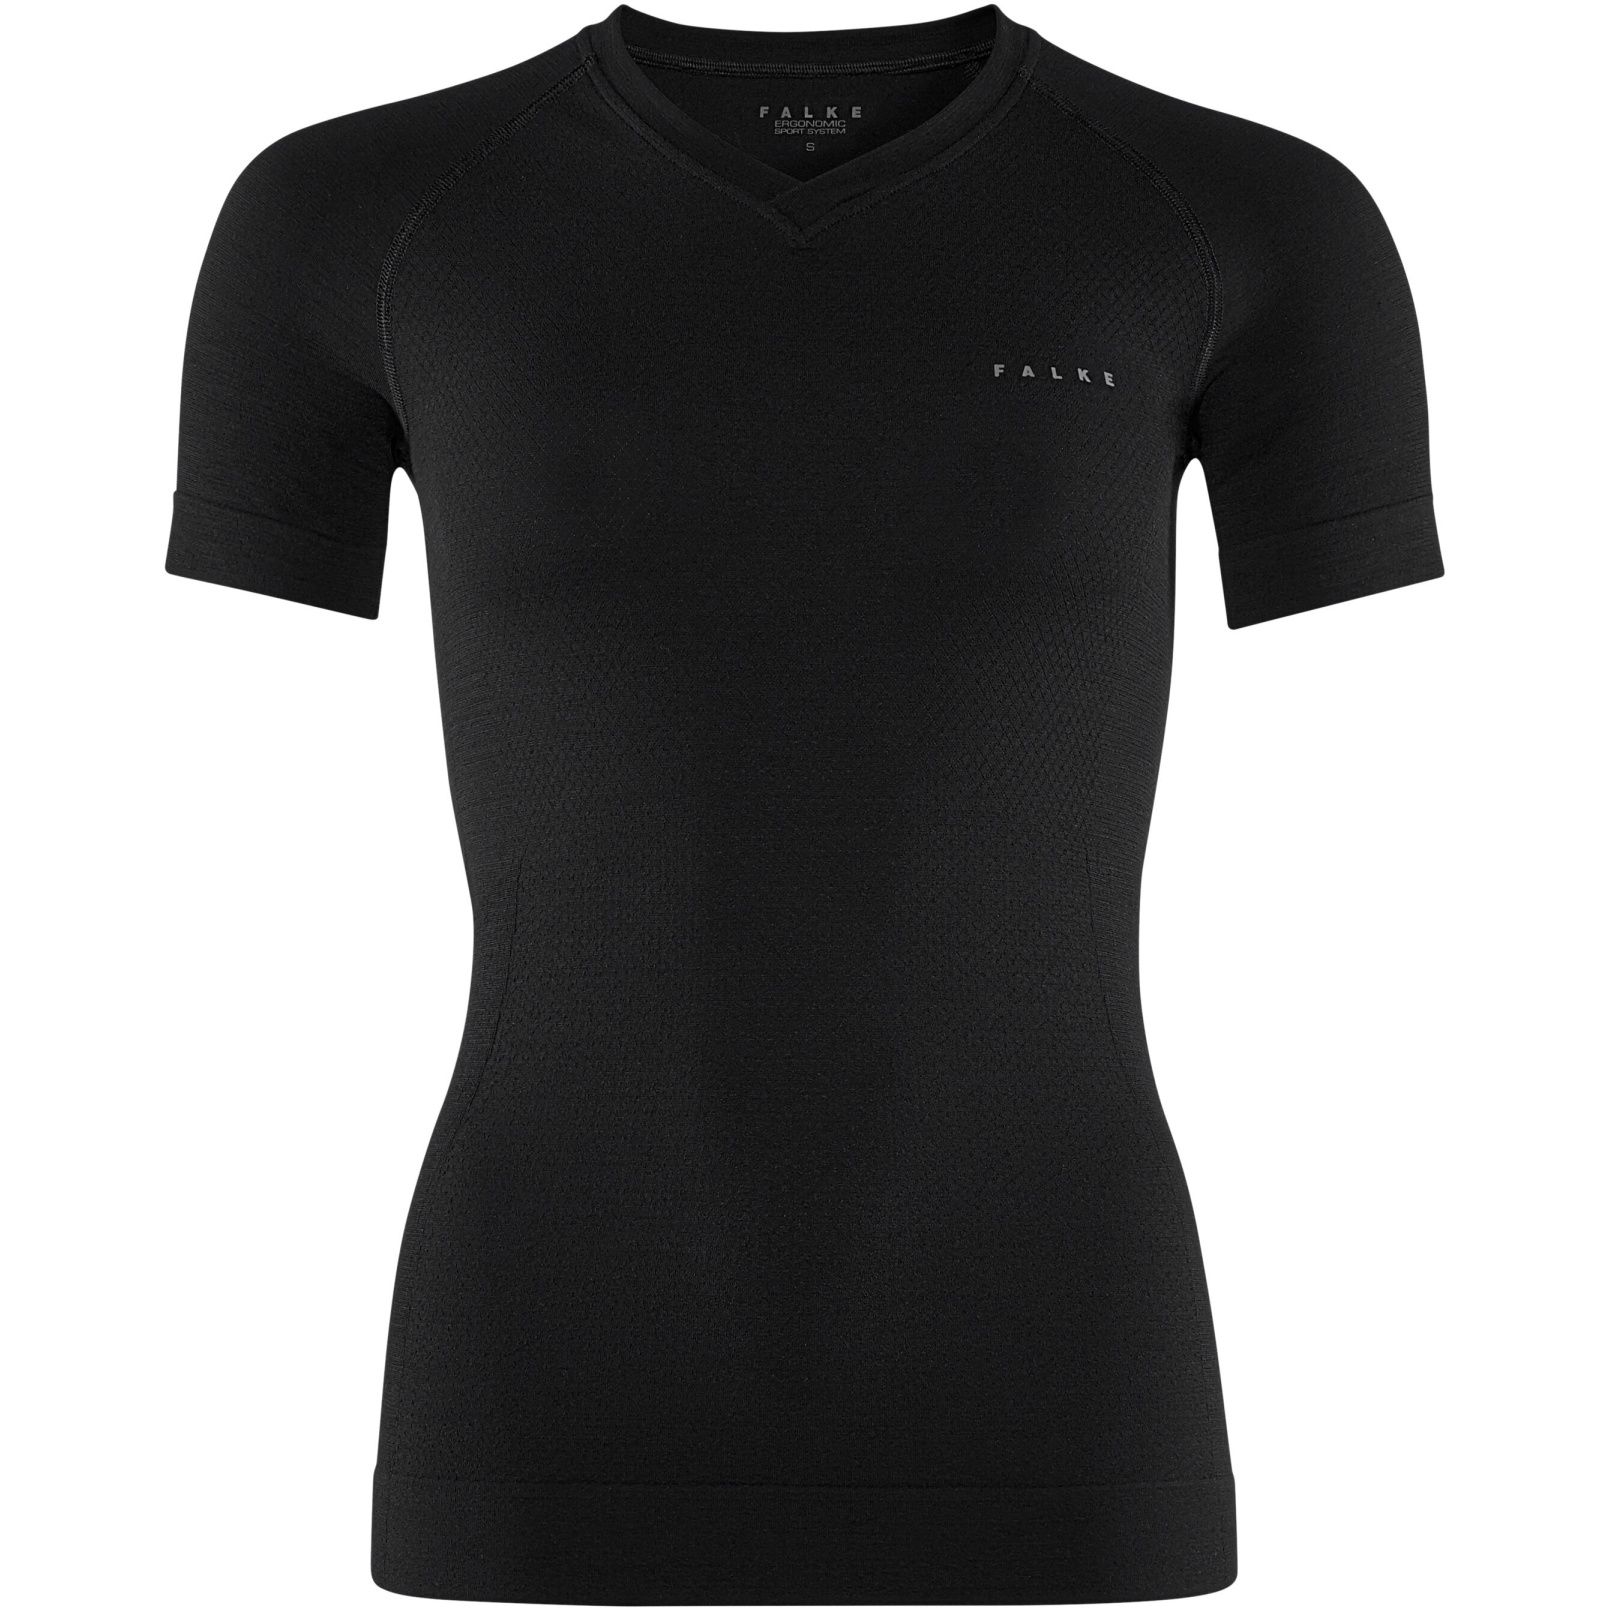 Produktbild von Falke Wool-Tech Light Kurzarmshirt Damen - schwarz 3000